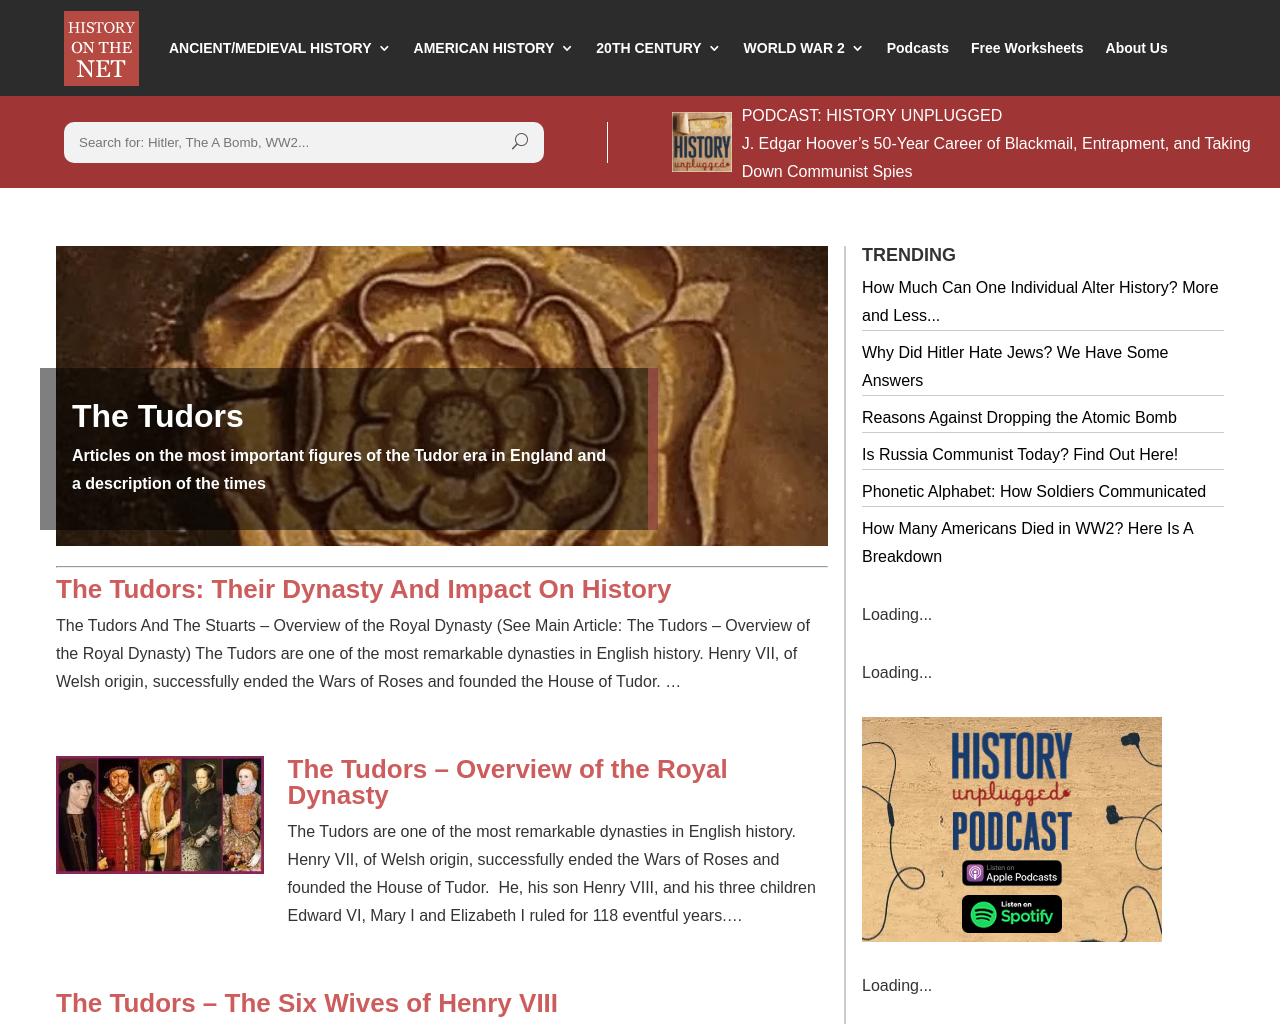 The Tudors: History on the Net